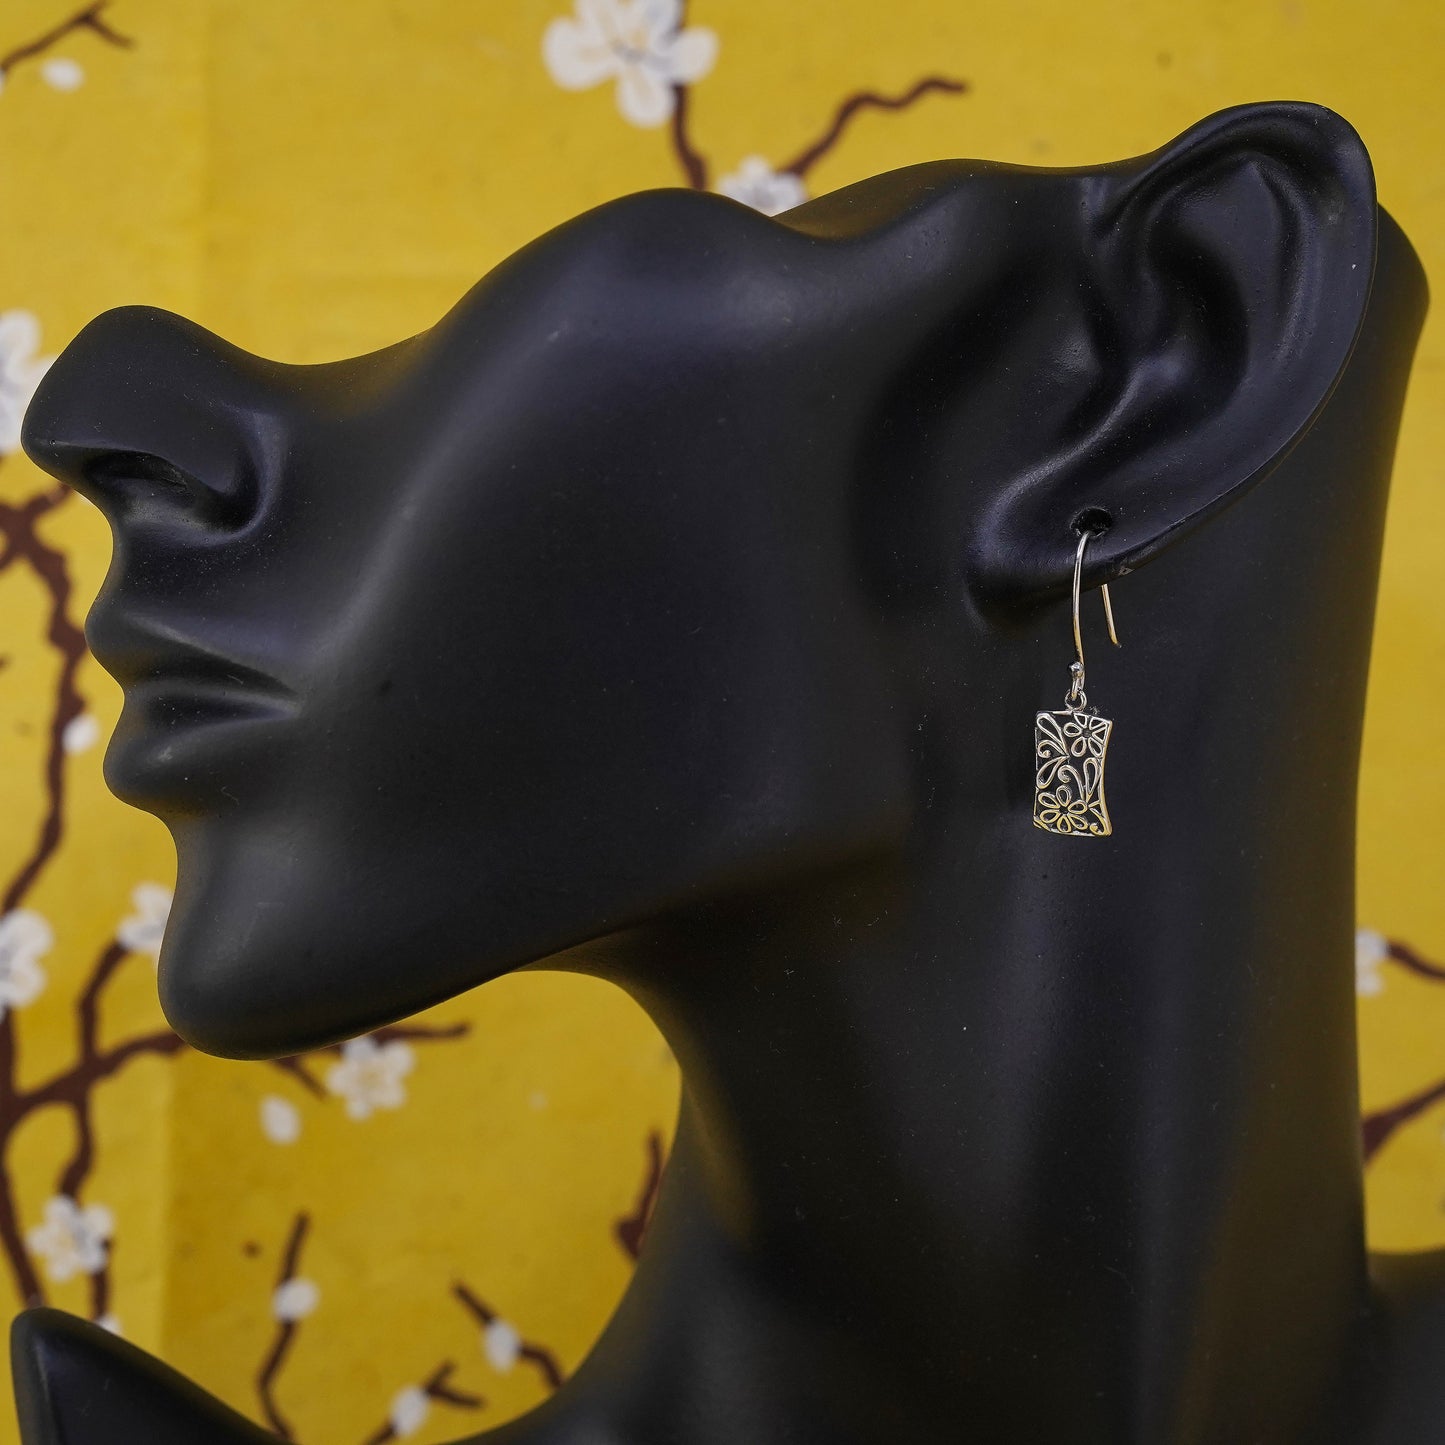 Vintage Sterling silver handmade earrings, 925 flower drops